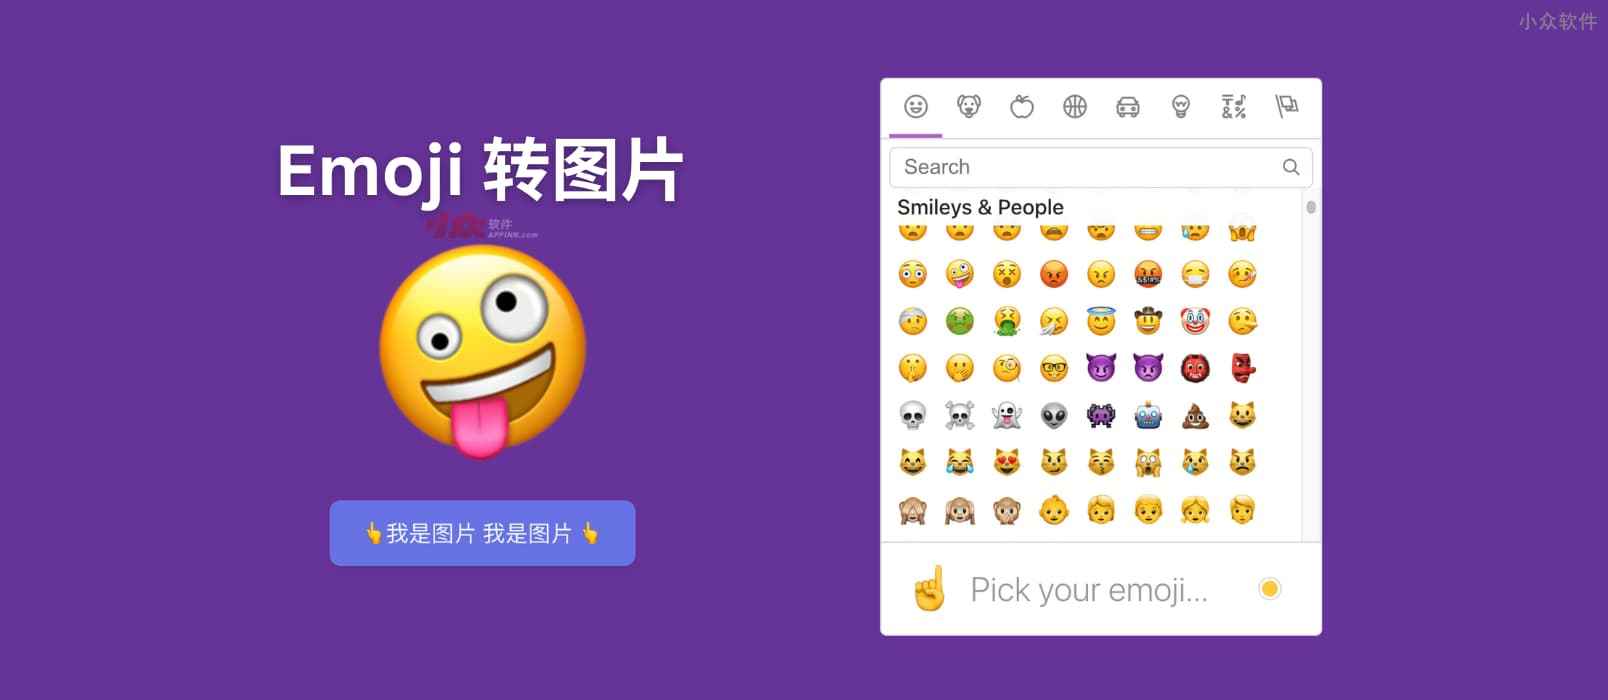 Emoji to image – 一个简单的将 Emoji 表情转换为图片的工具